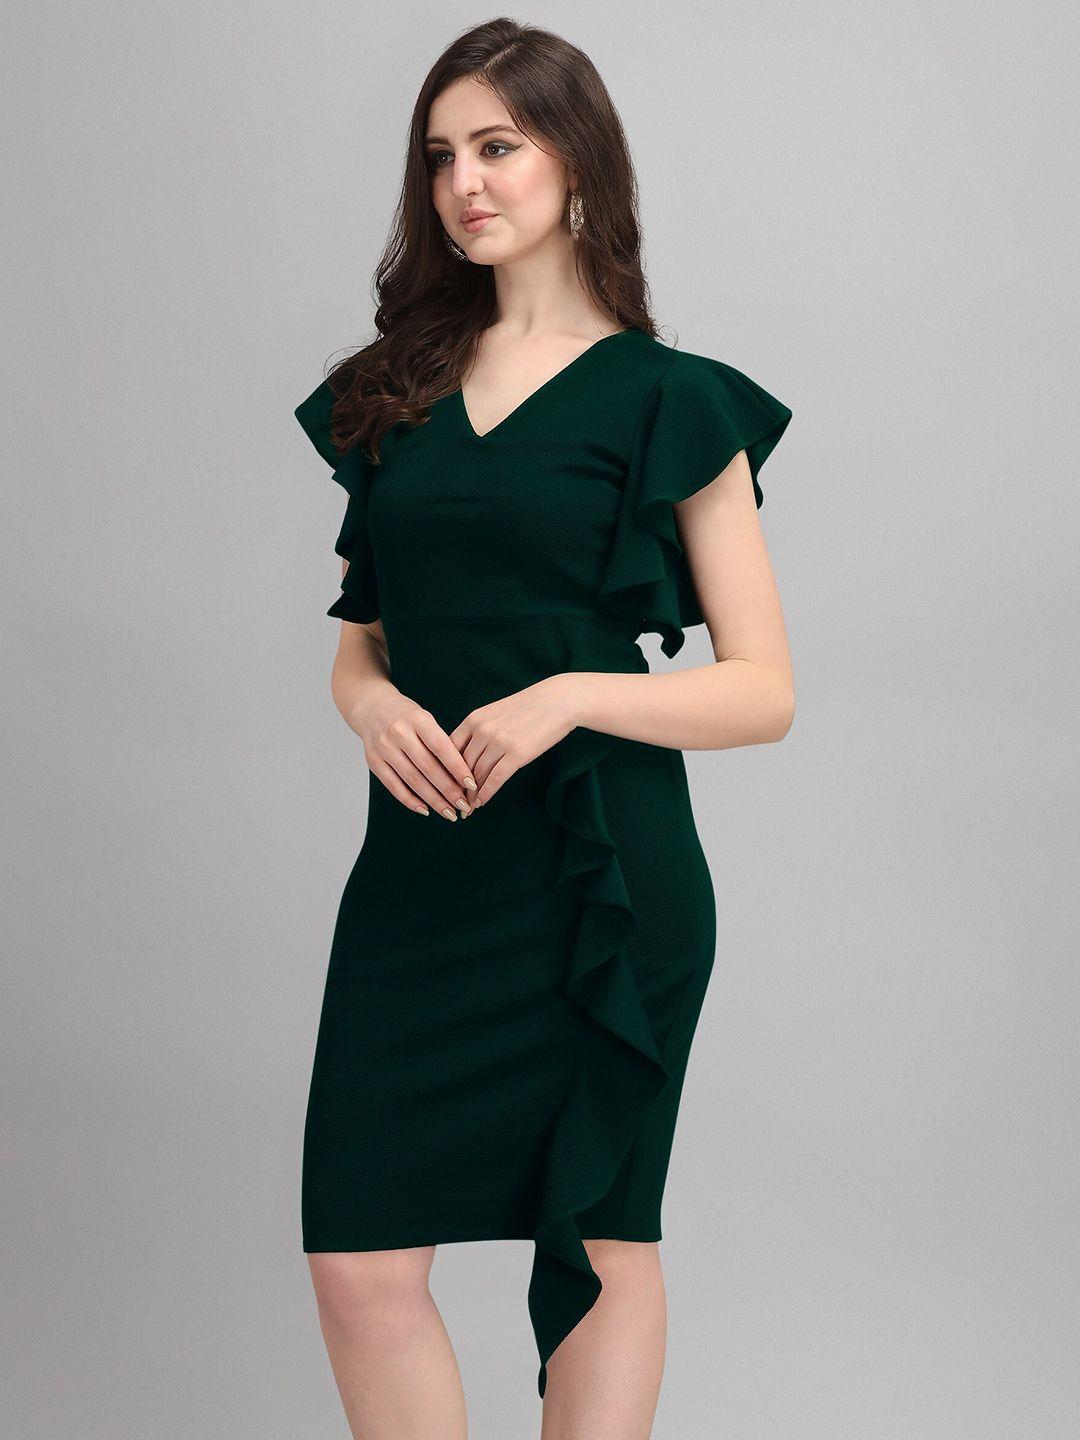 sheetal-associates-green-a-line-dress